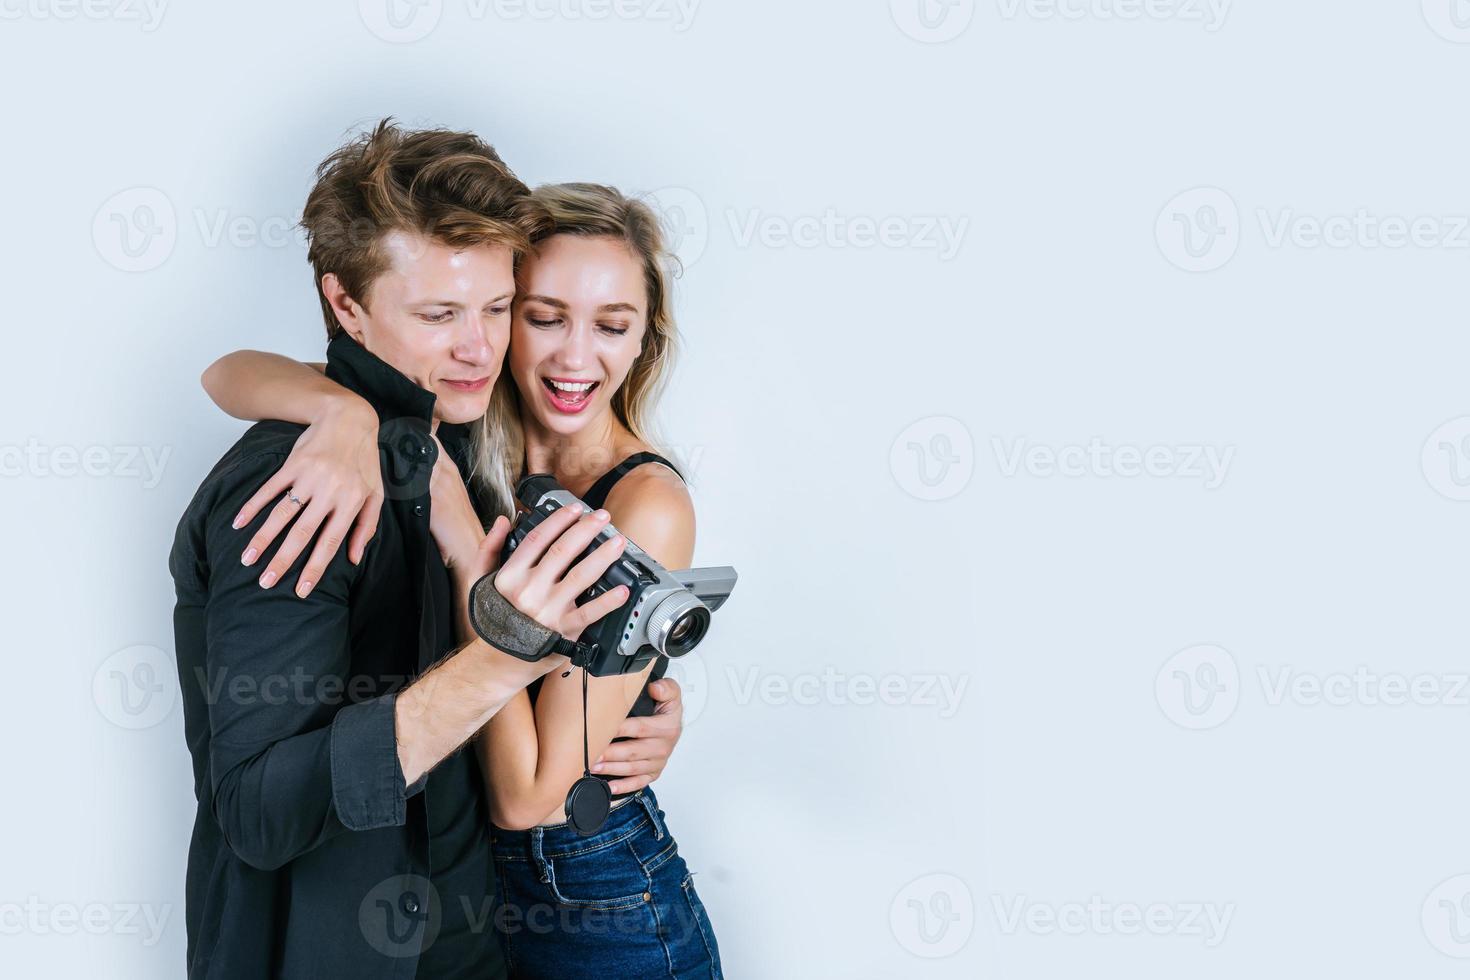 Heureux portrait de couple tenant une caméra vidéo et l'enregistrement d'une vidéo photo